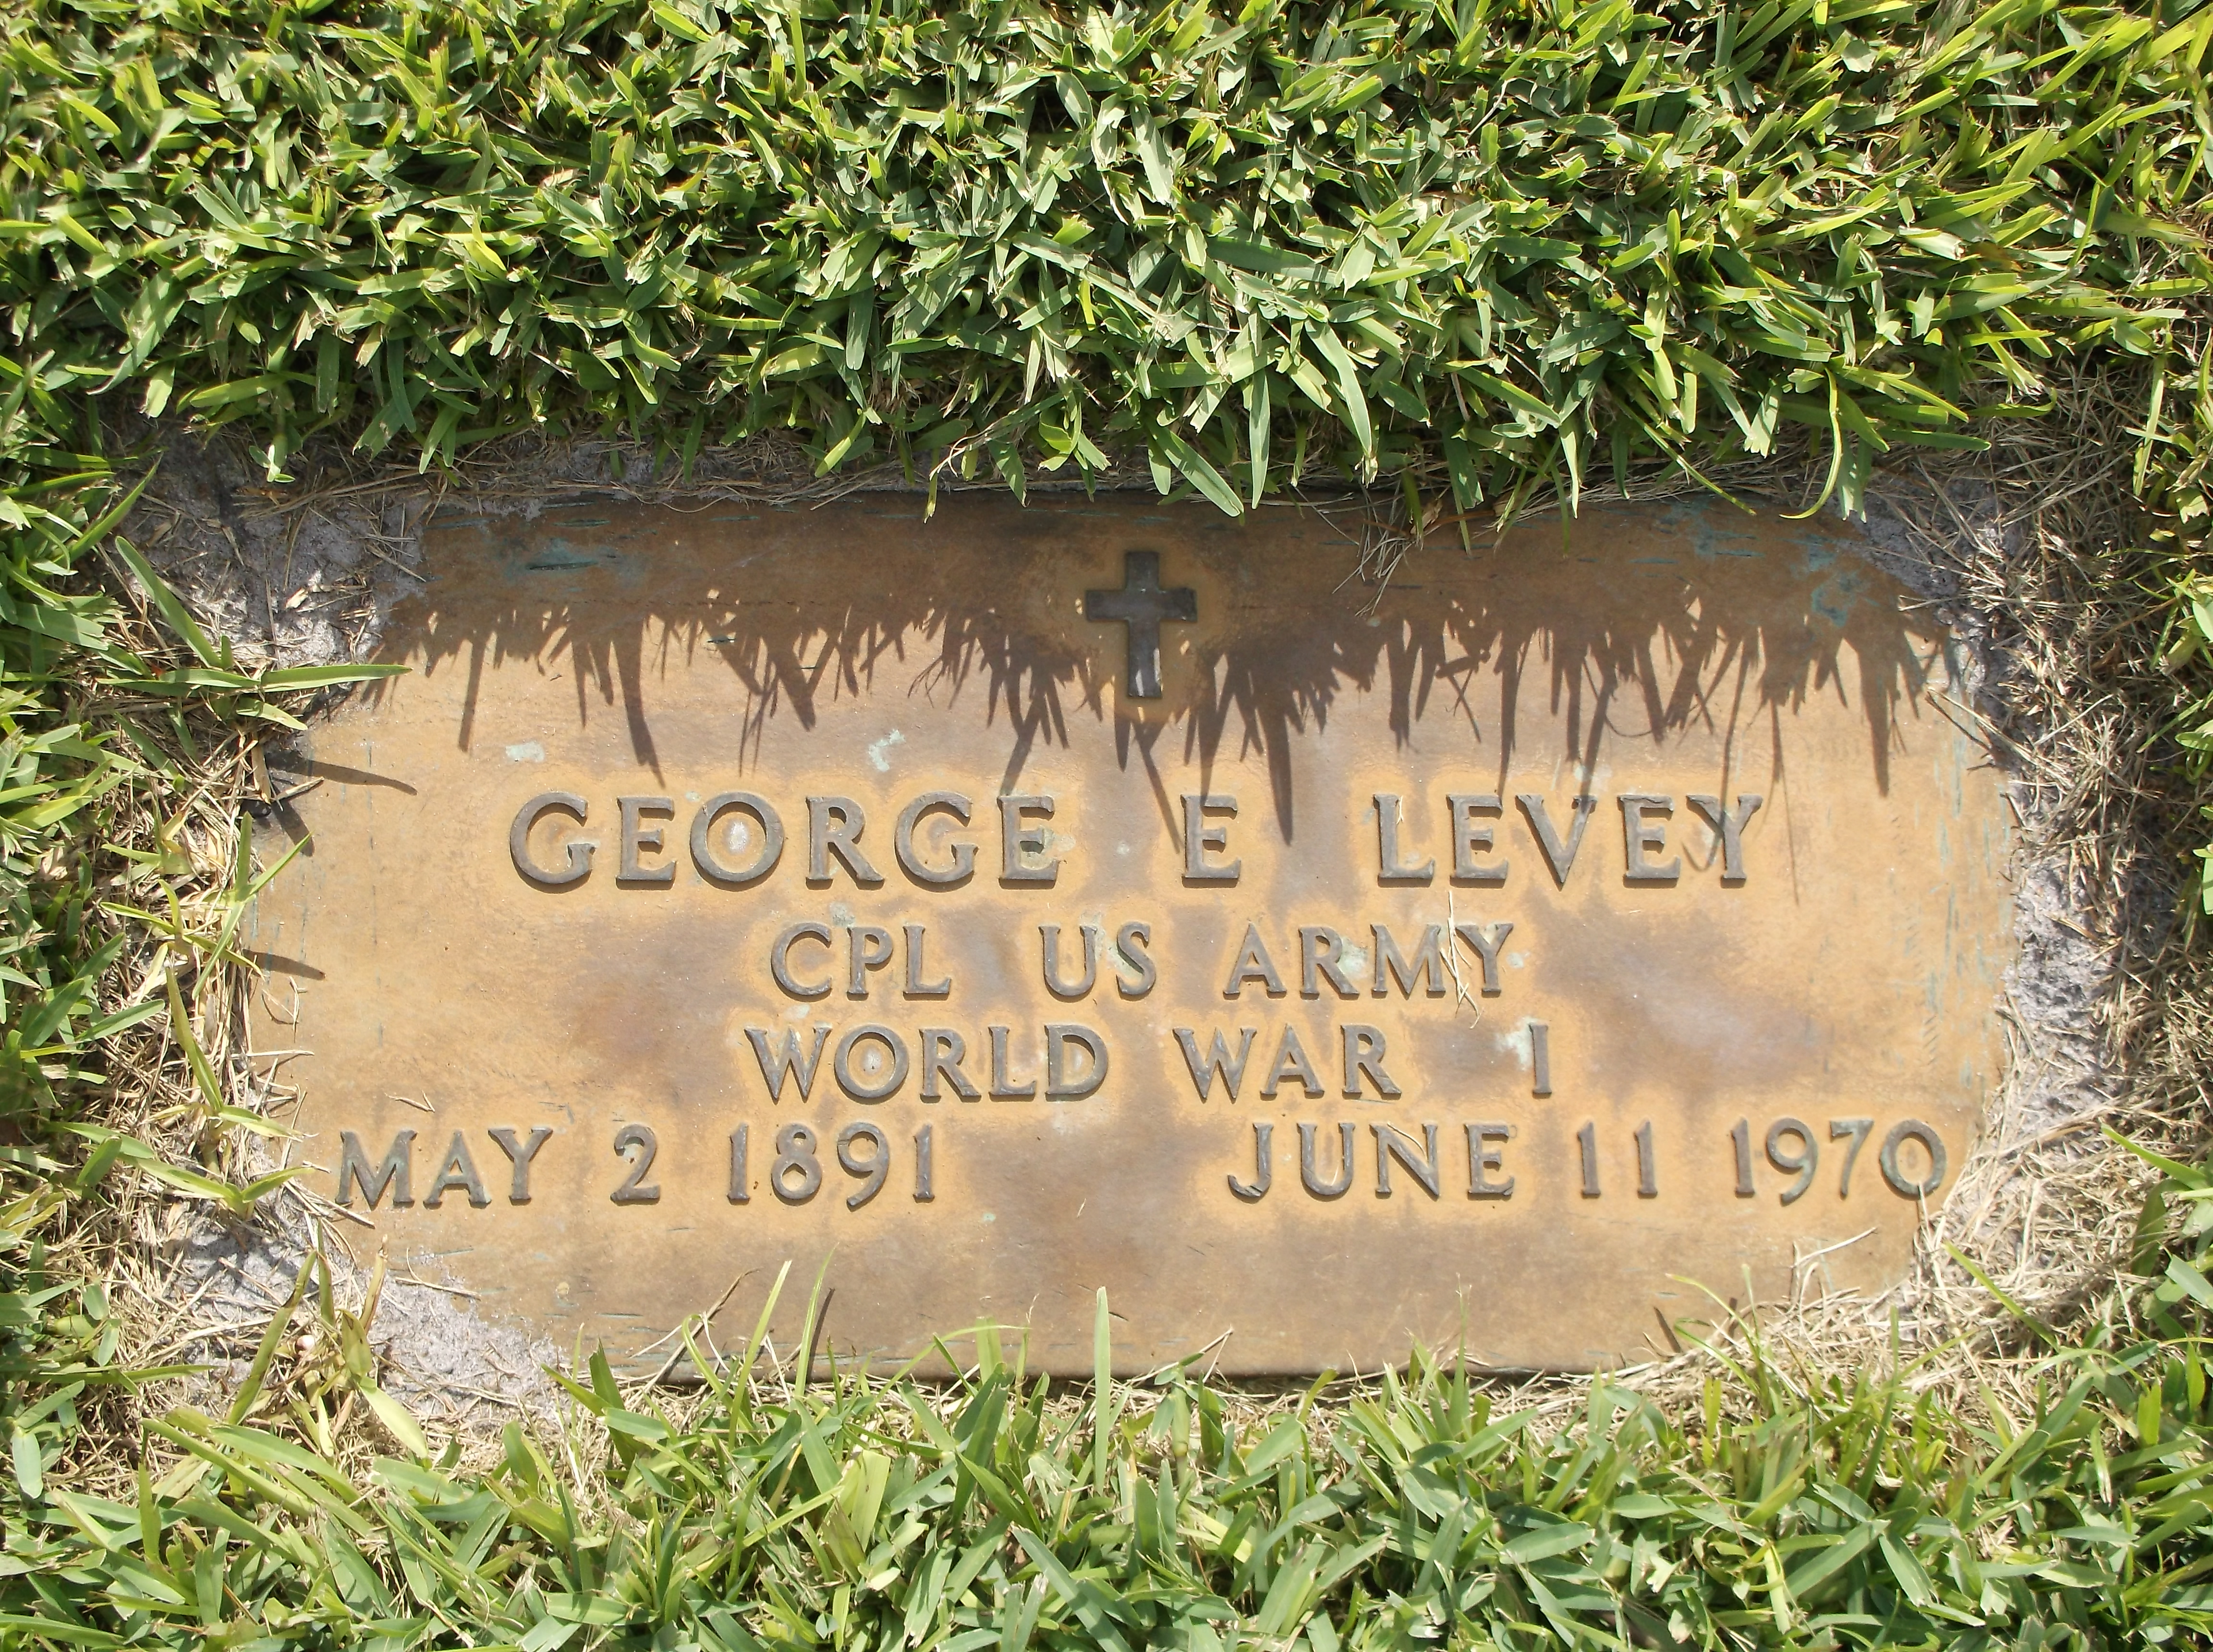 George E Levey